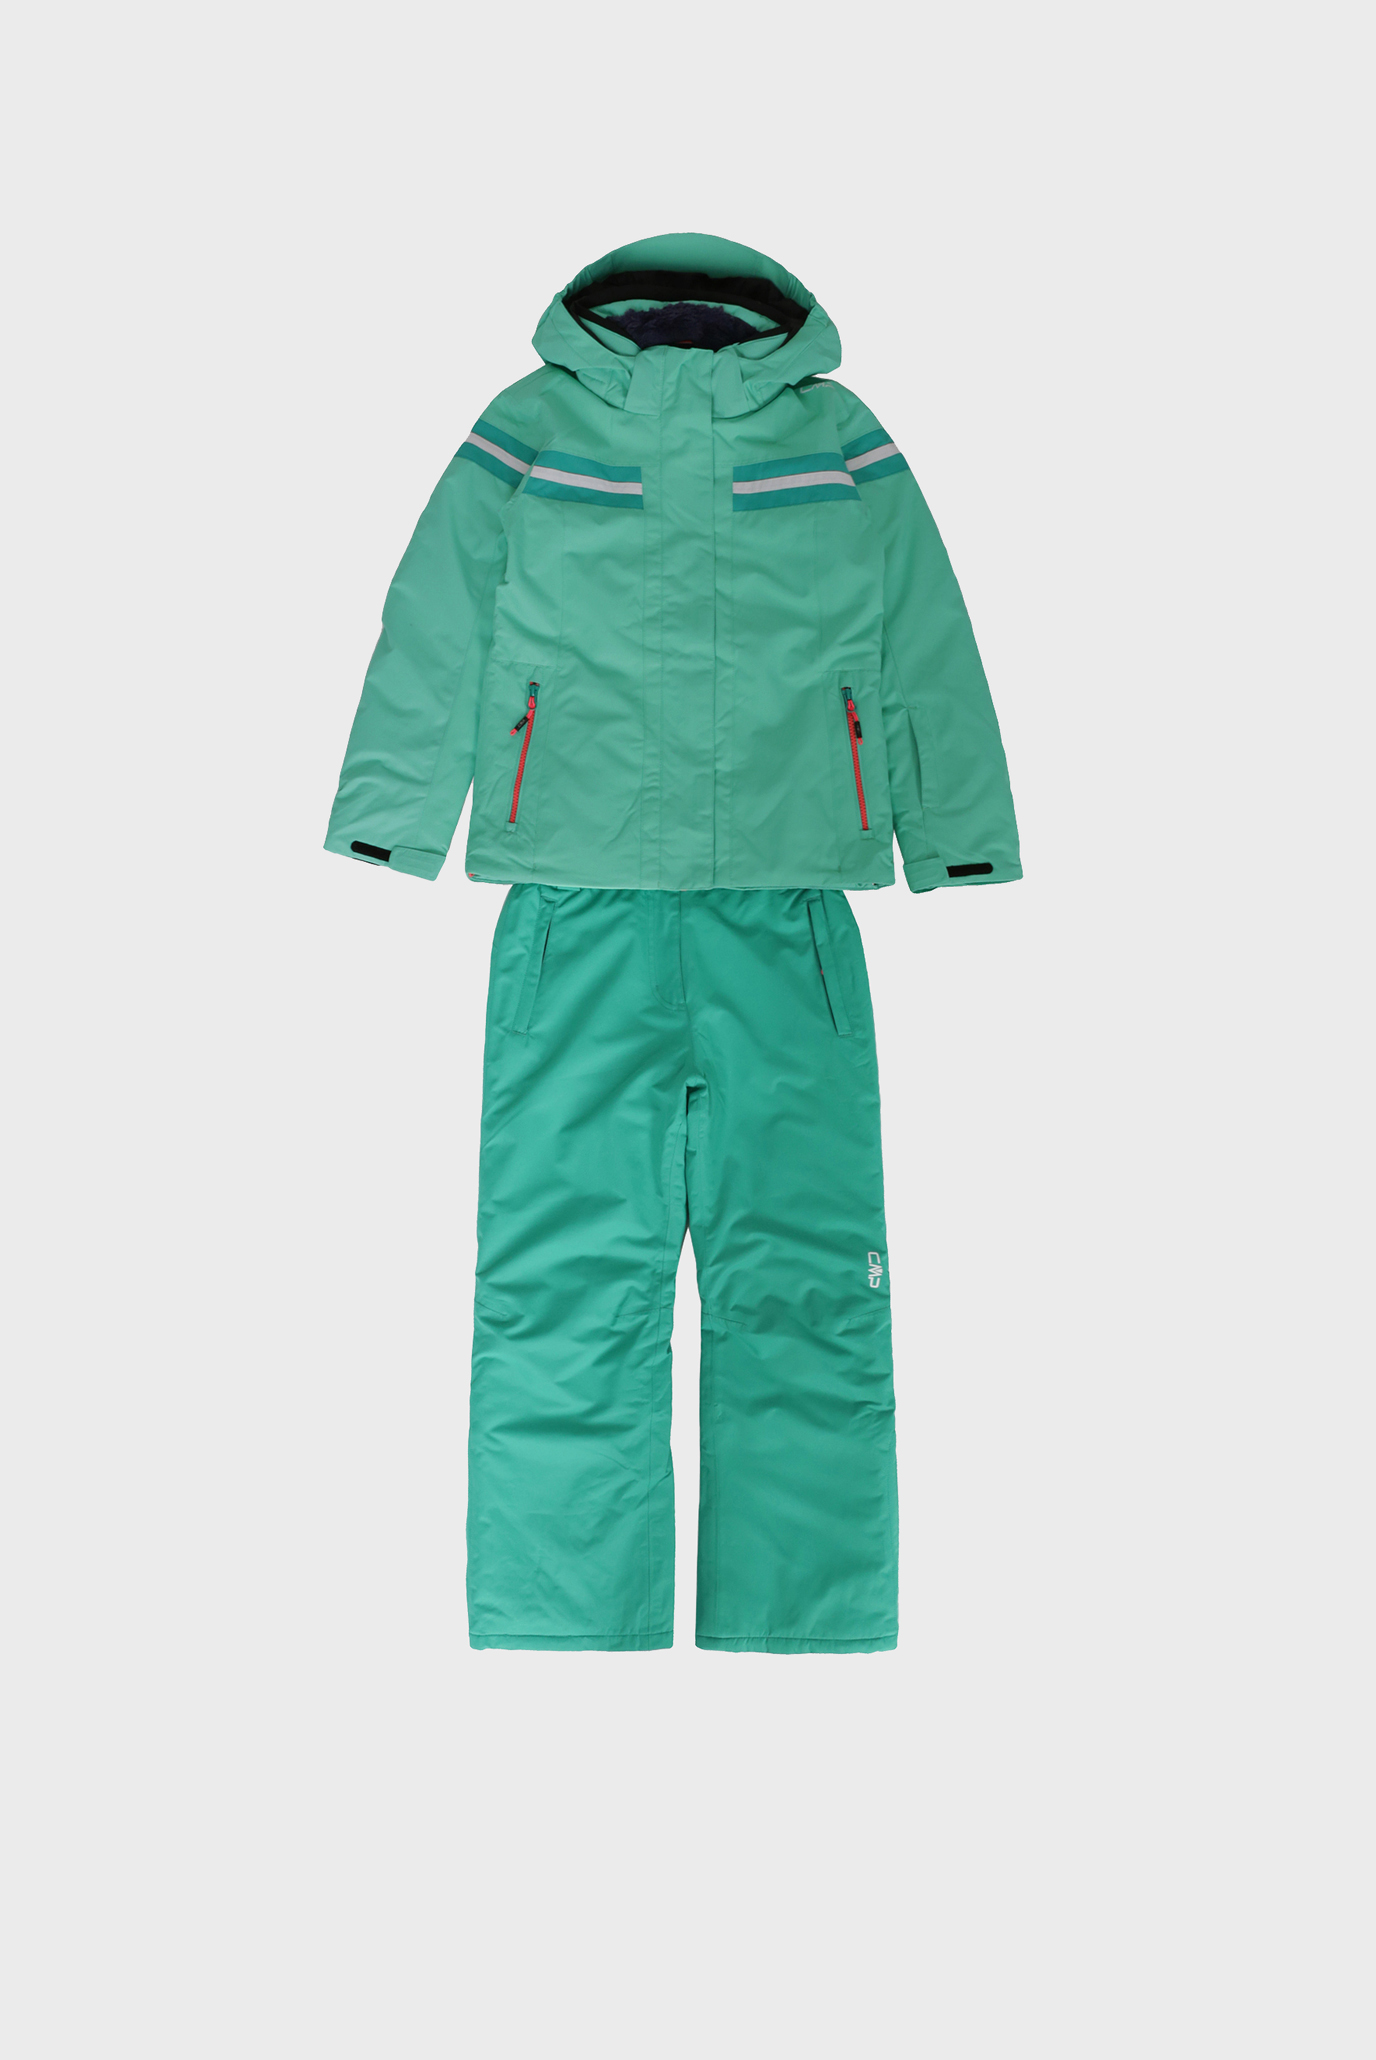 Детский салатовый лыжный костюм (куртка, брюки) 1